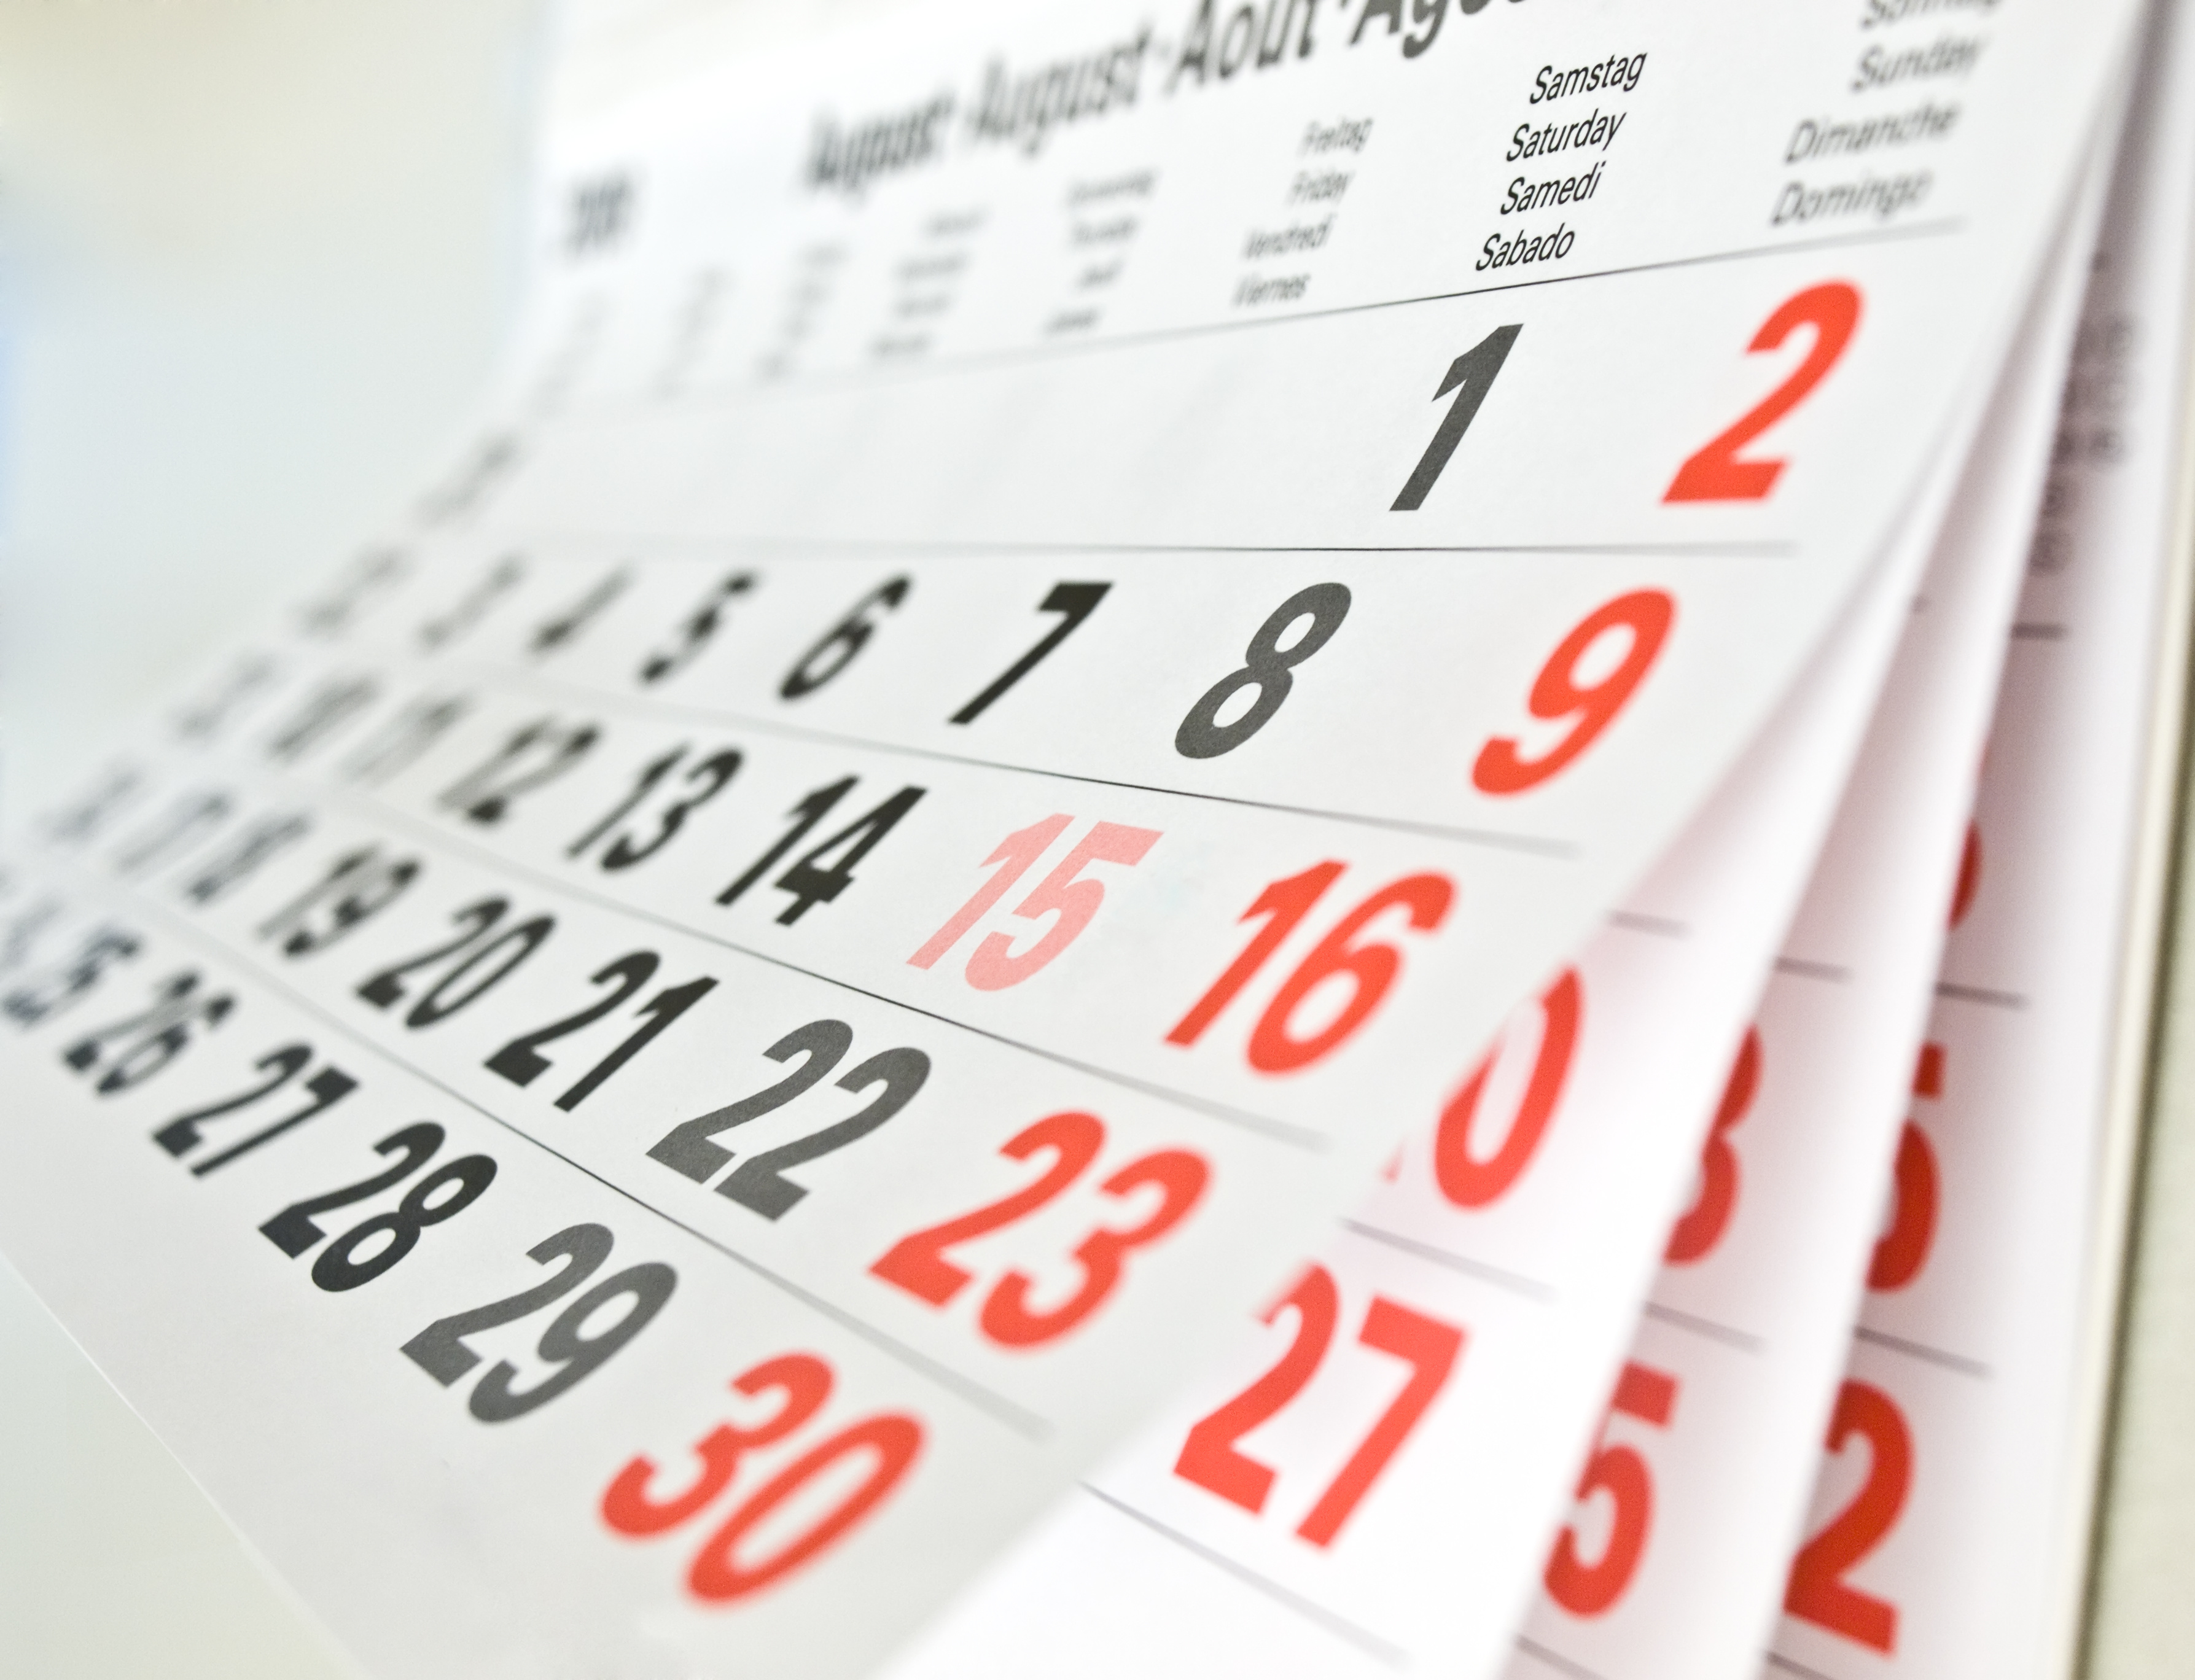 Firmowy kalendarz trójdzielny — czym różni się od swoich odpowiedników?